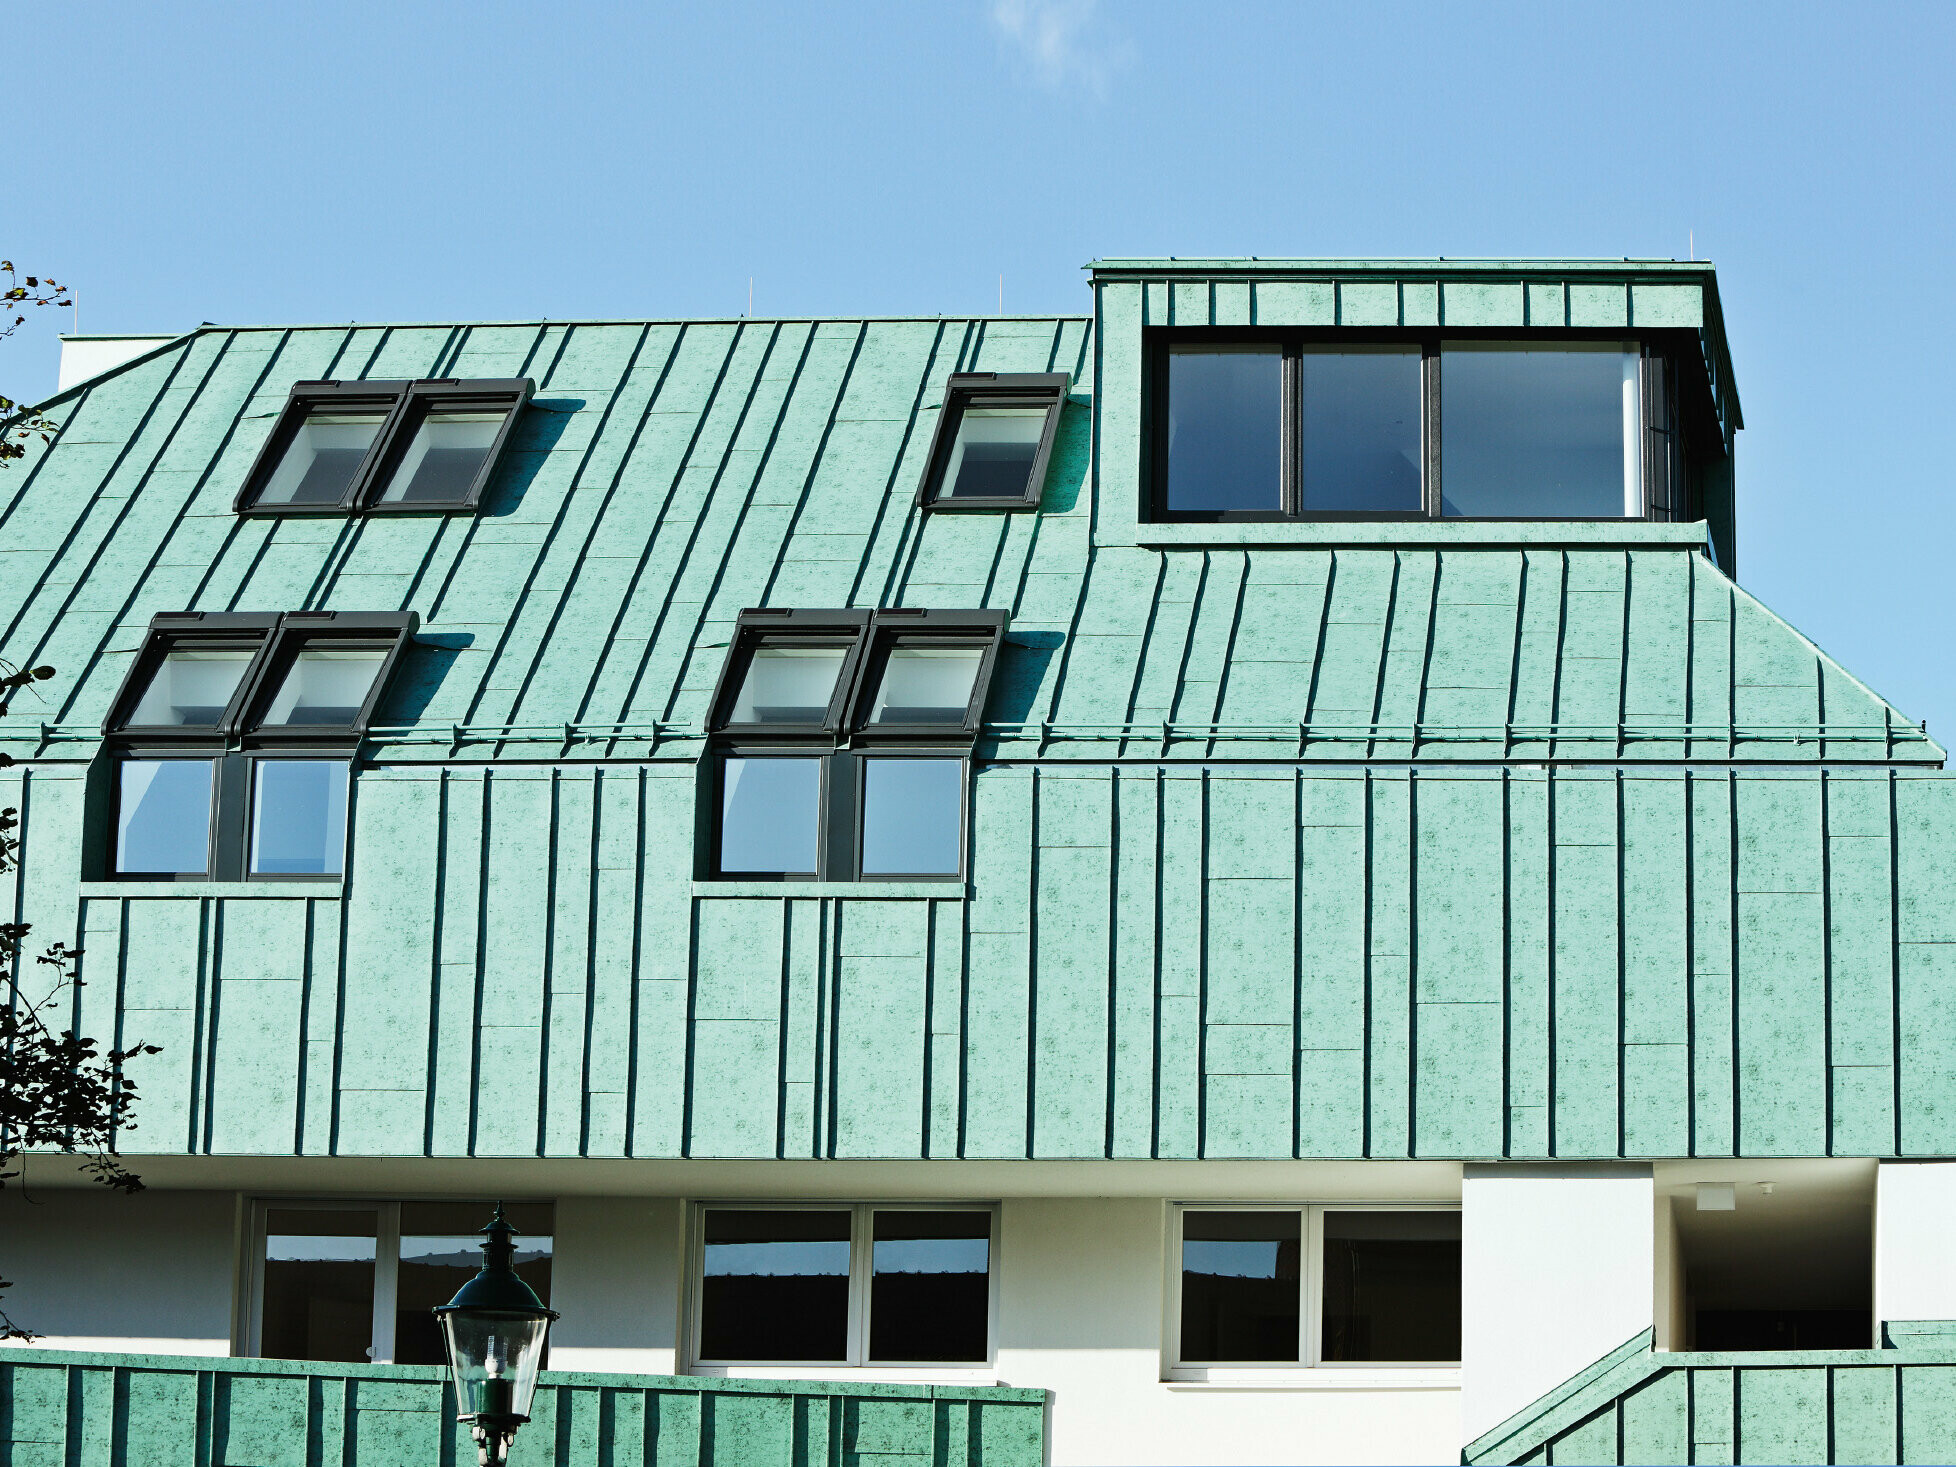 Oblikovanje krova i fasade sa sustavom PREFALZ u patina zelenoj boji tvrtke PREFA s različitim širinama traka